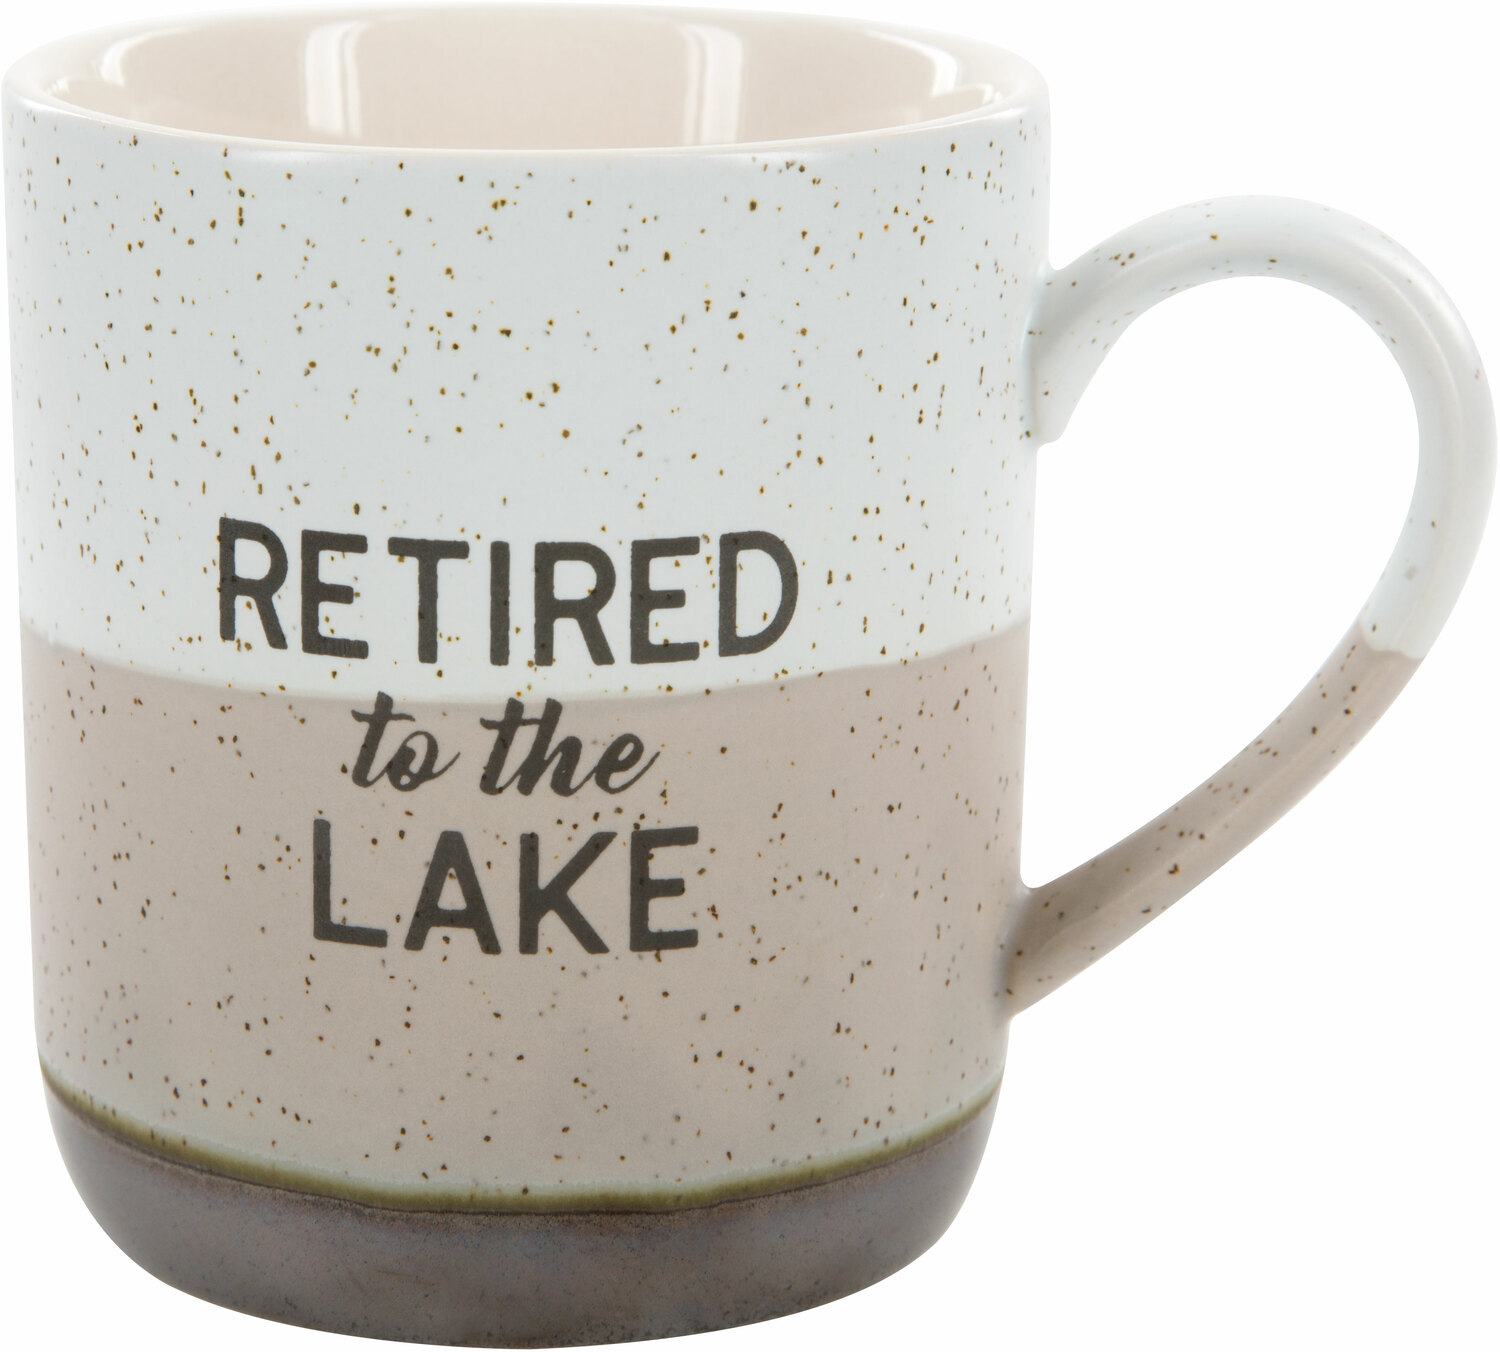 Lake by Retired Life - Lake - 15 oz Mug